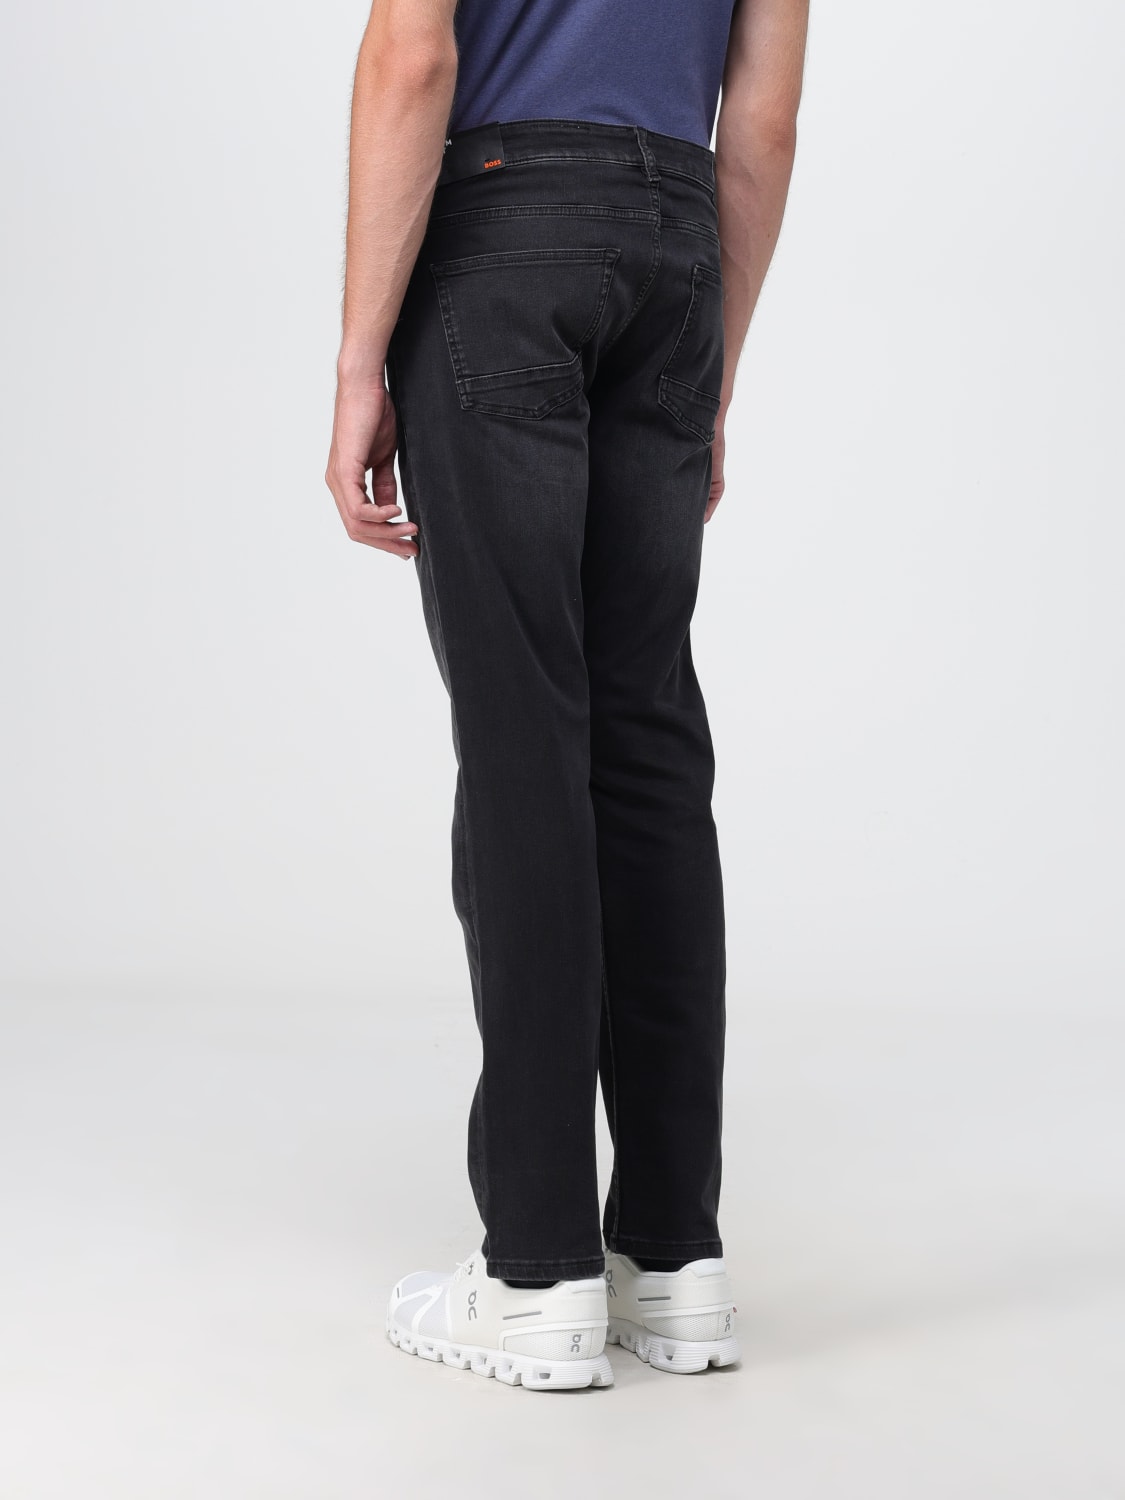 Teknologi kål sende BOSS: jeans for man - Black | Boss jeans 50503434 online at GIGLIO.COM